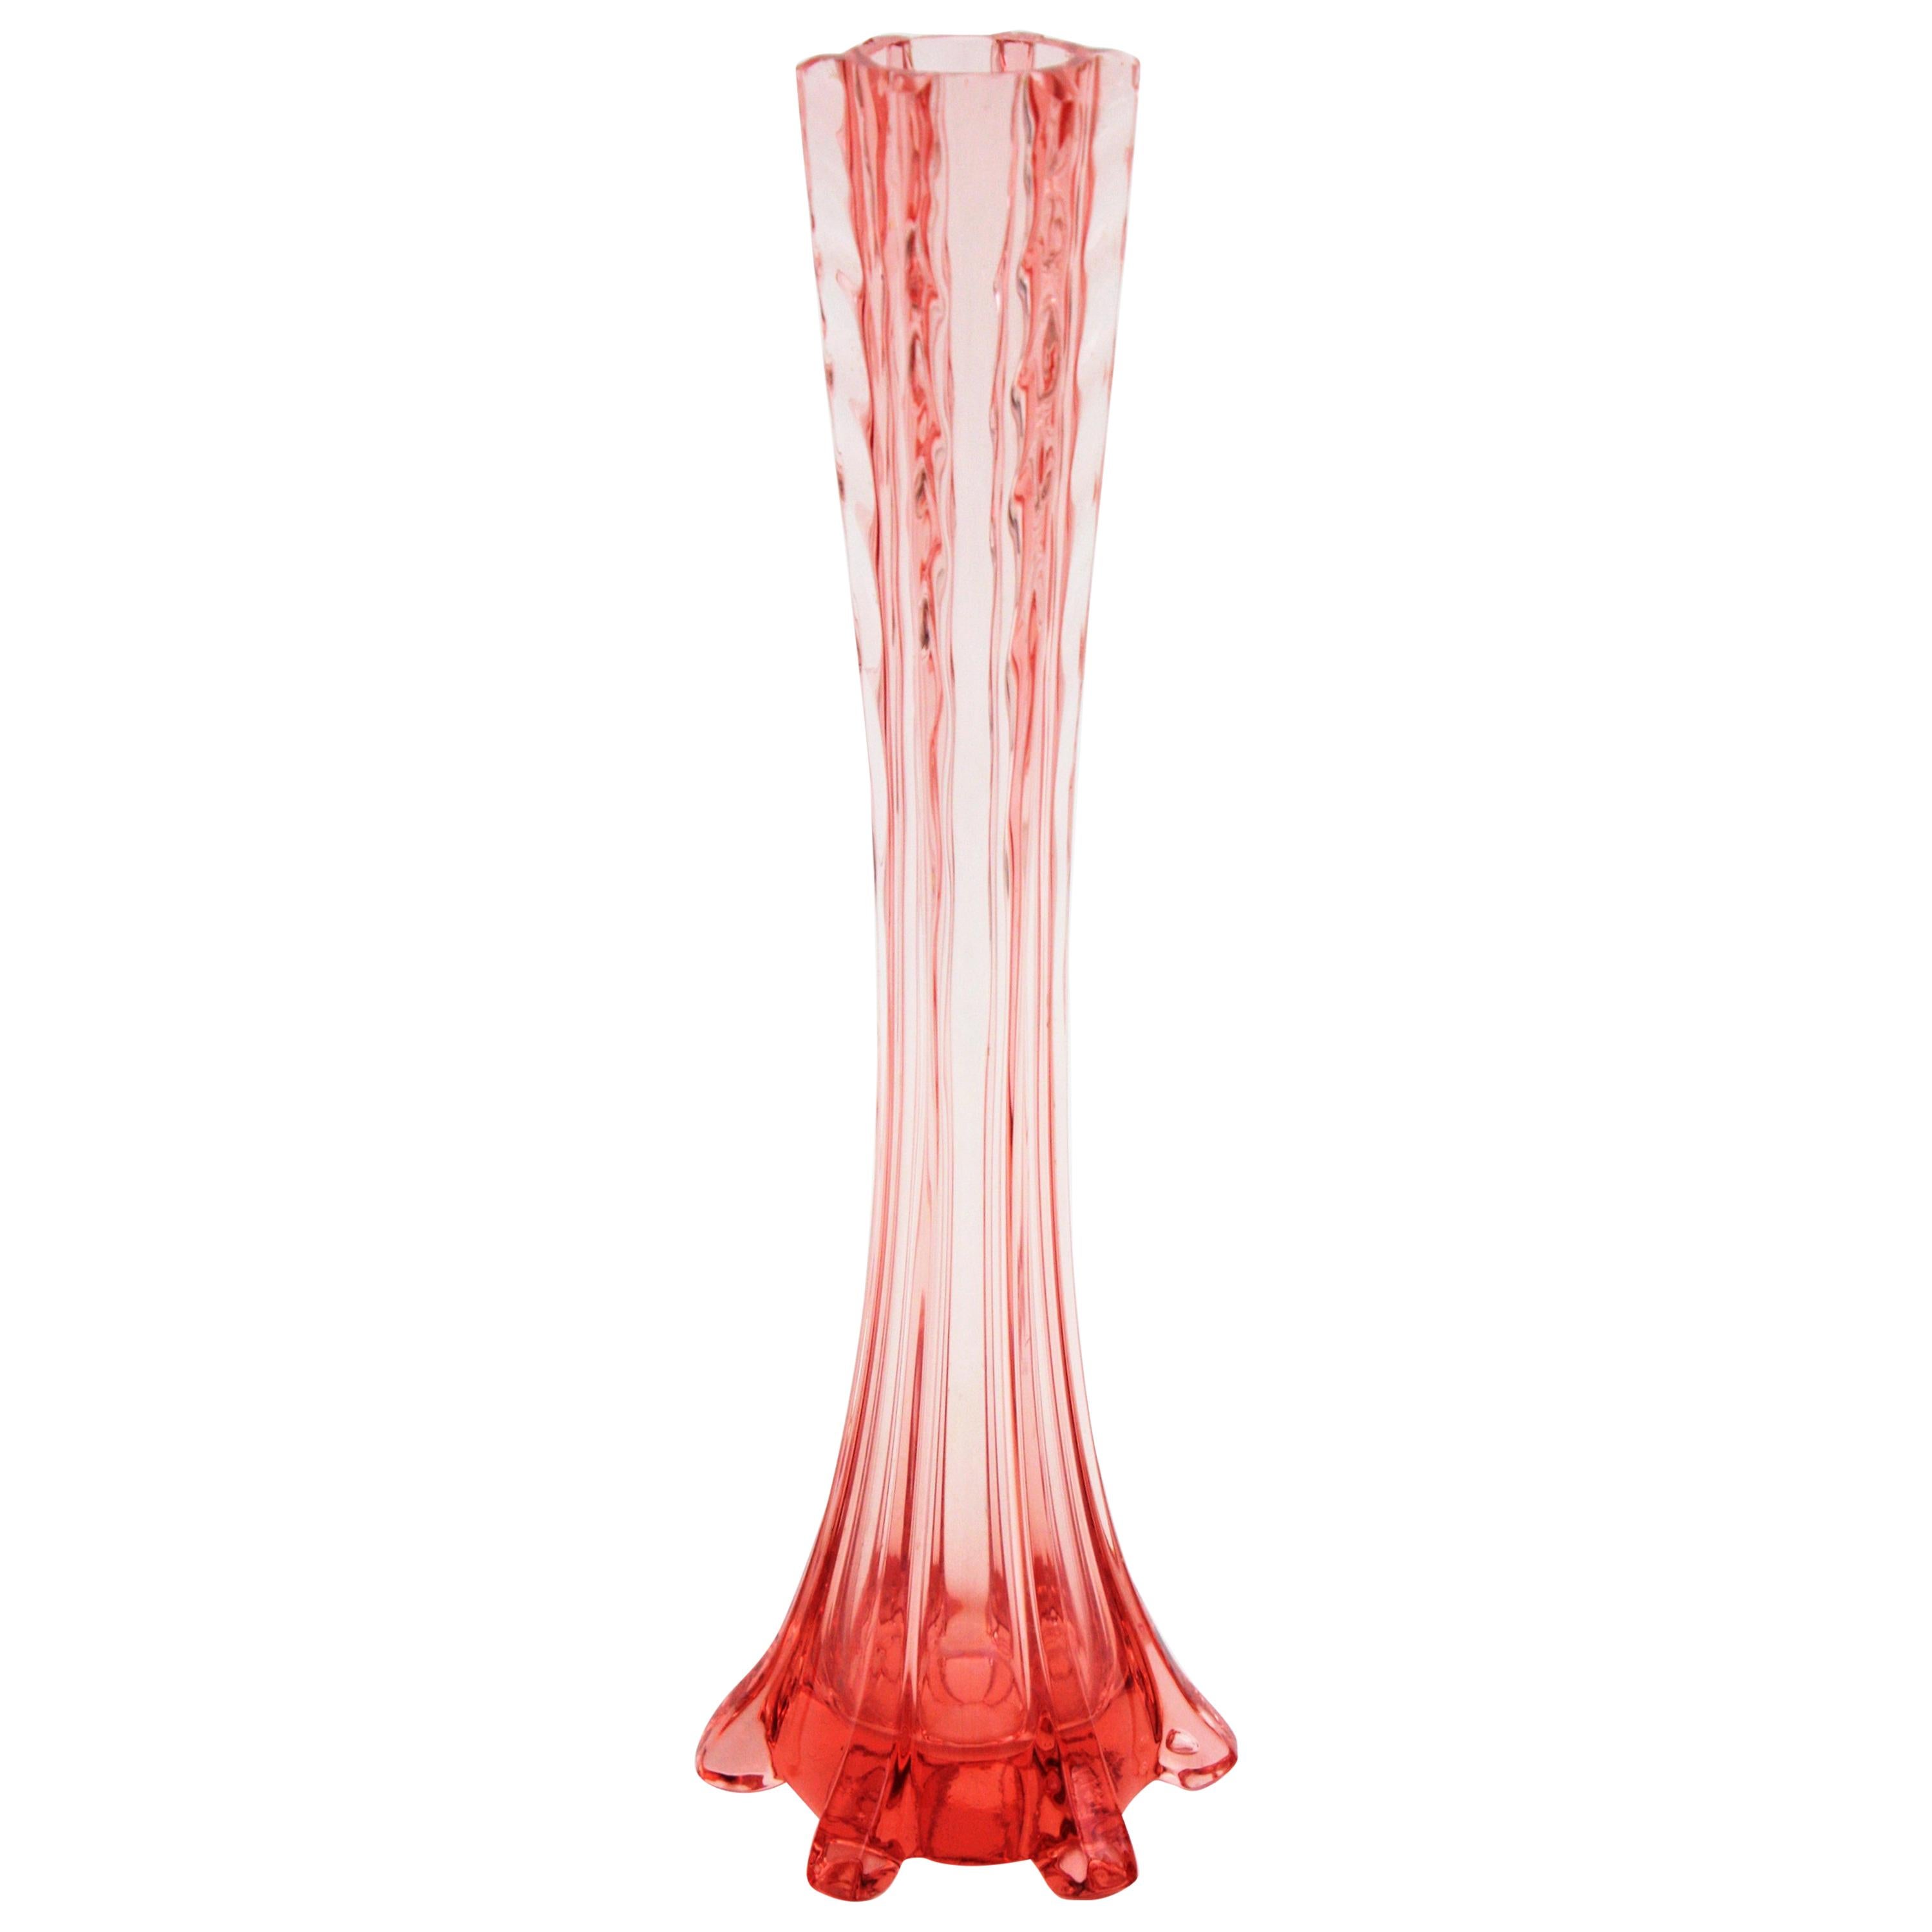 Élégant vase à une fleur de style Baccarat en verre soufflé ambre-rose, France, années 1930.
Ce vase monofloral à long col présente des détails en verre appliqué sur ses côtés et des tourbillons qui décorent le col. Il peut être placé seul ou faire